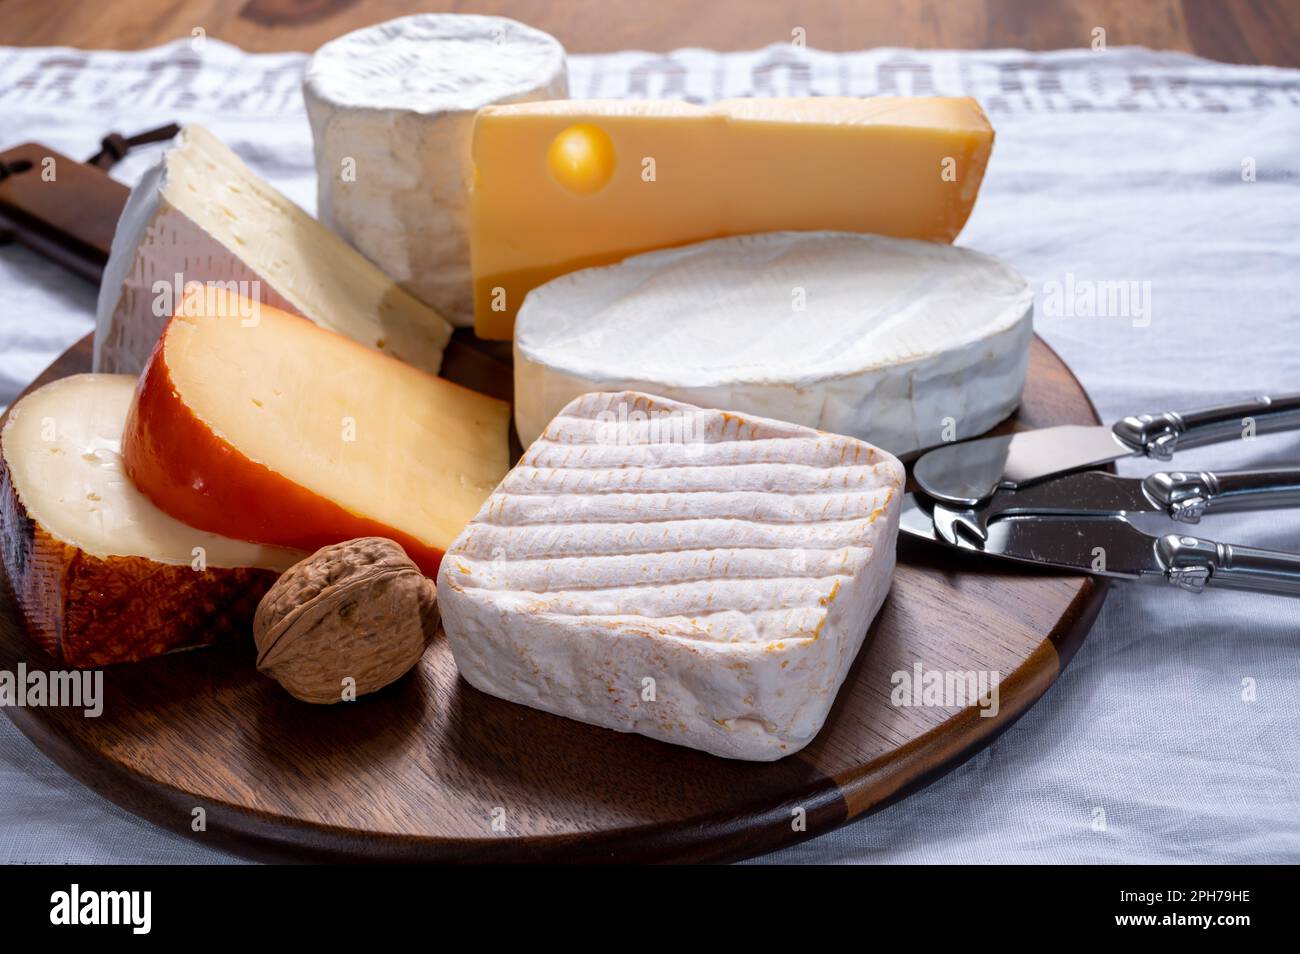 Sammlung belgischer Käsesorten, weicher gelber Kuhmilchkäse mit weißem Schimmel aus Brügge, Bouquet des moines aus der Abtei Val-Dieu, cremiger Käse und B. Stockfoto